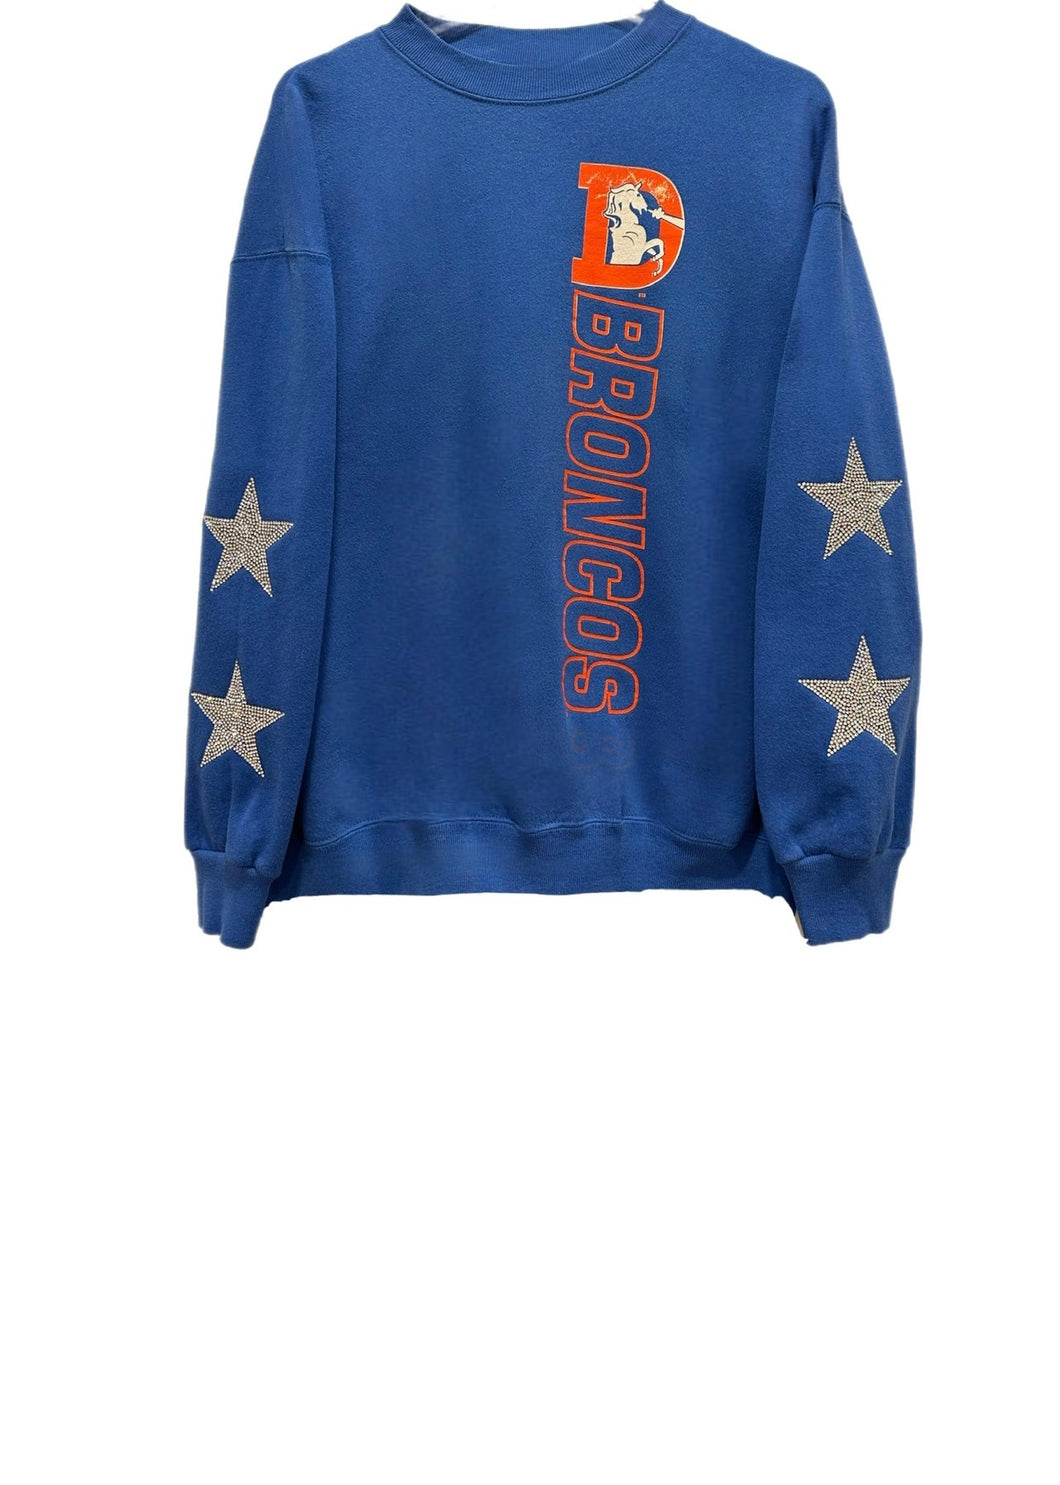 Denver Broncos, NFL One of a KIND Vintage “Rare Find” Sweatshirt with Crystal Star Design